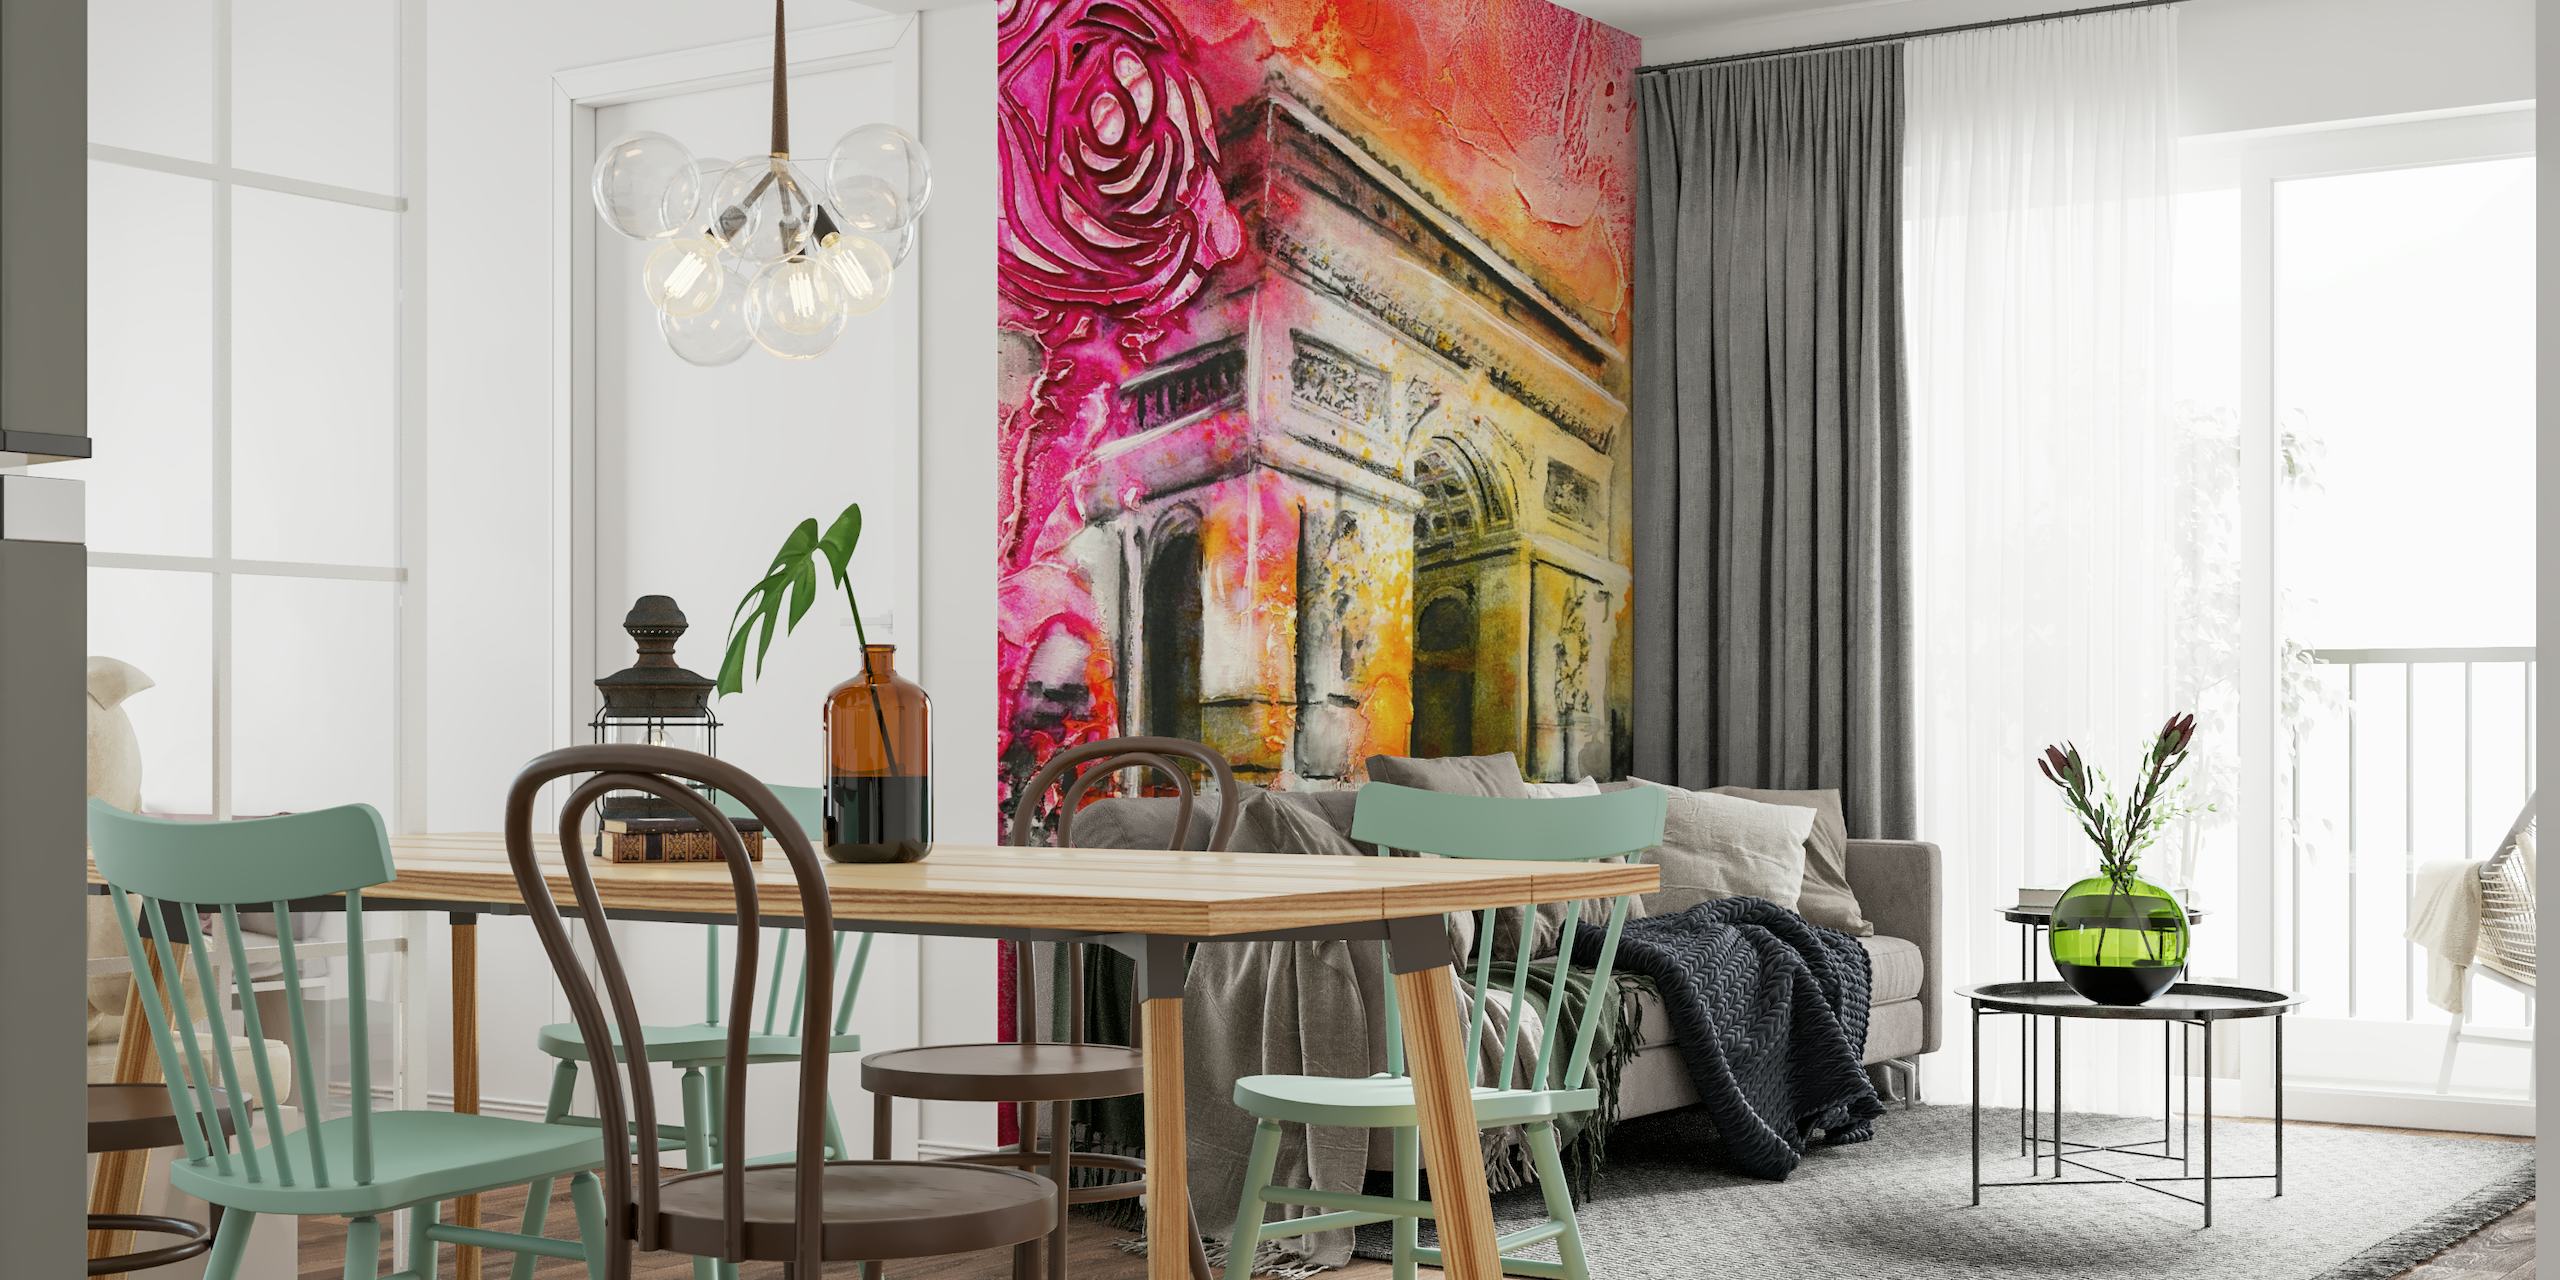 Murale espressivo e colorato ispirato a Parigi con l'Arco di Trionfo in vivaci rosa e rossi.